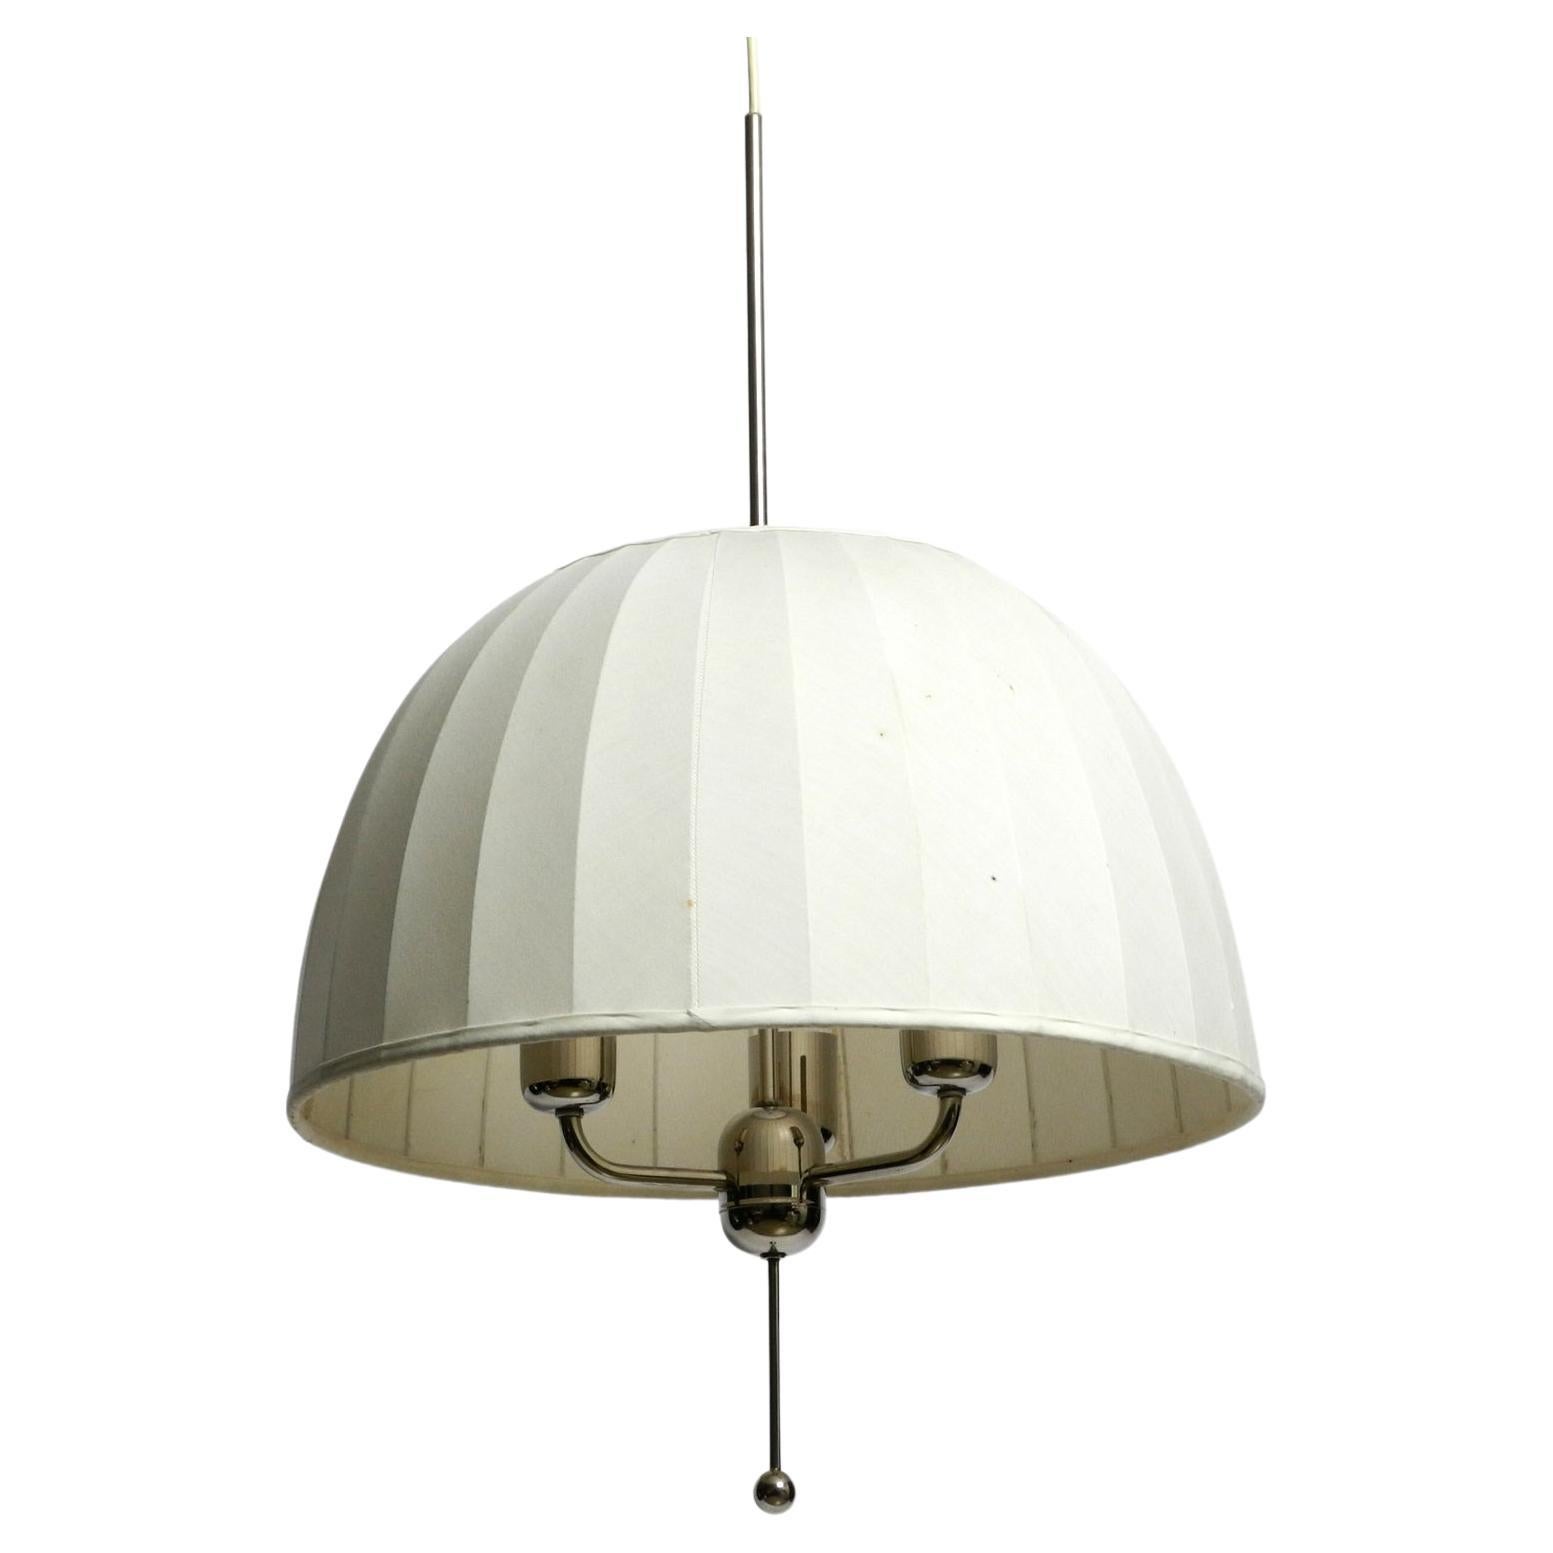 1960s pendant lamp “Carolin” model T549 by Hans-Agne Jakobsson for Markaryd